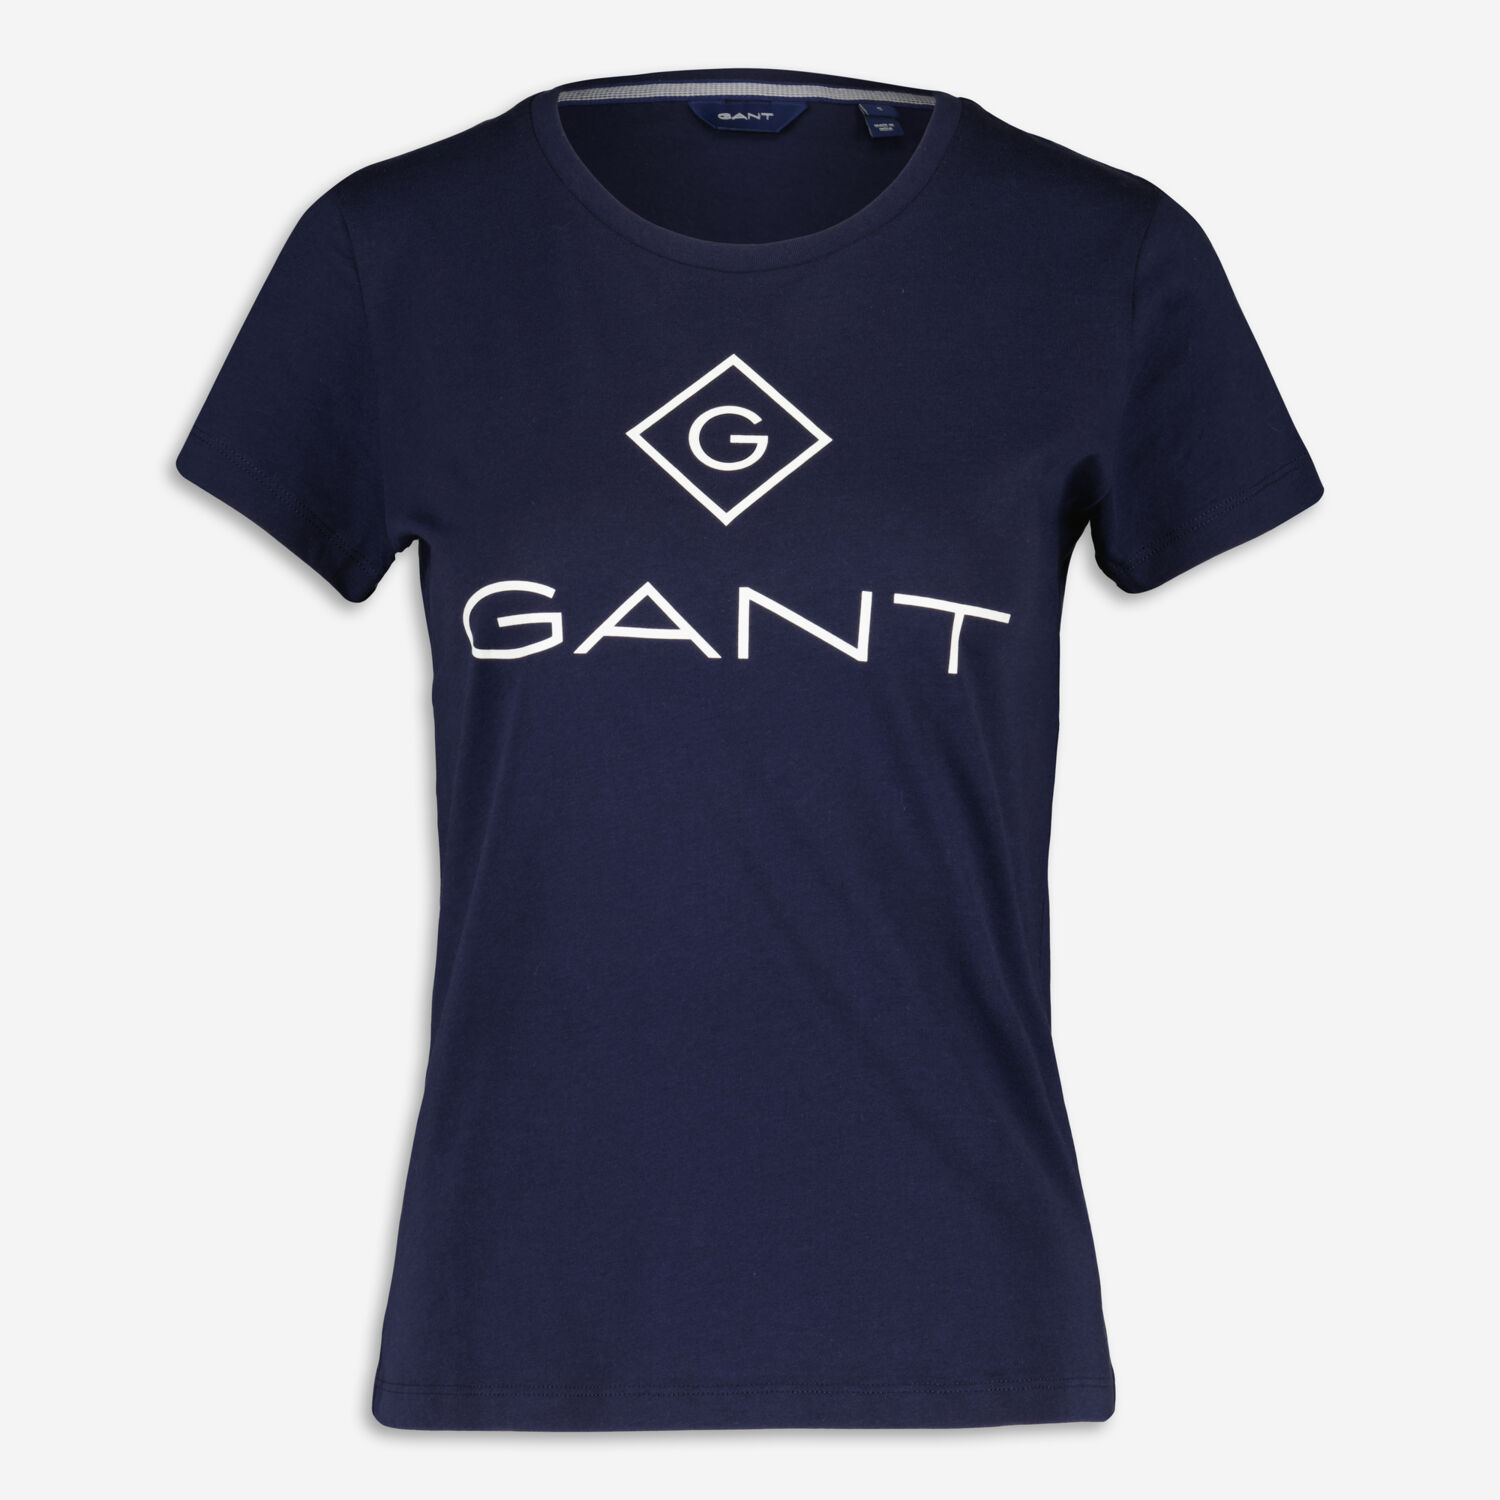 Темно-синяя футболка с белым логотипом Gant